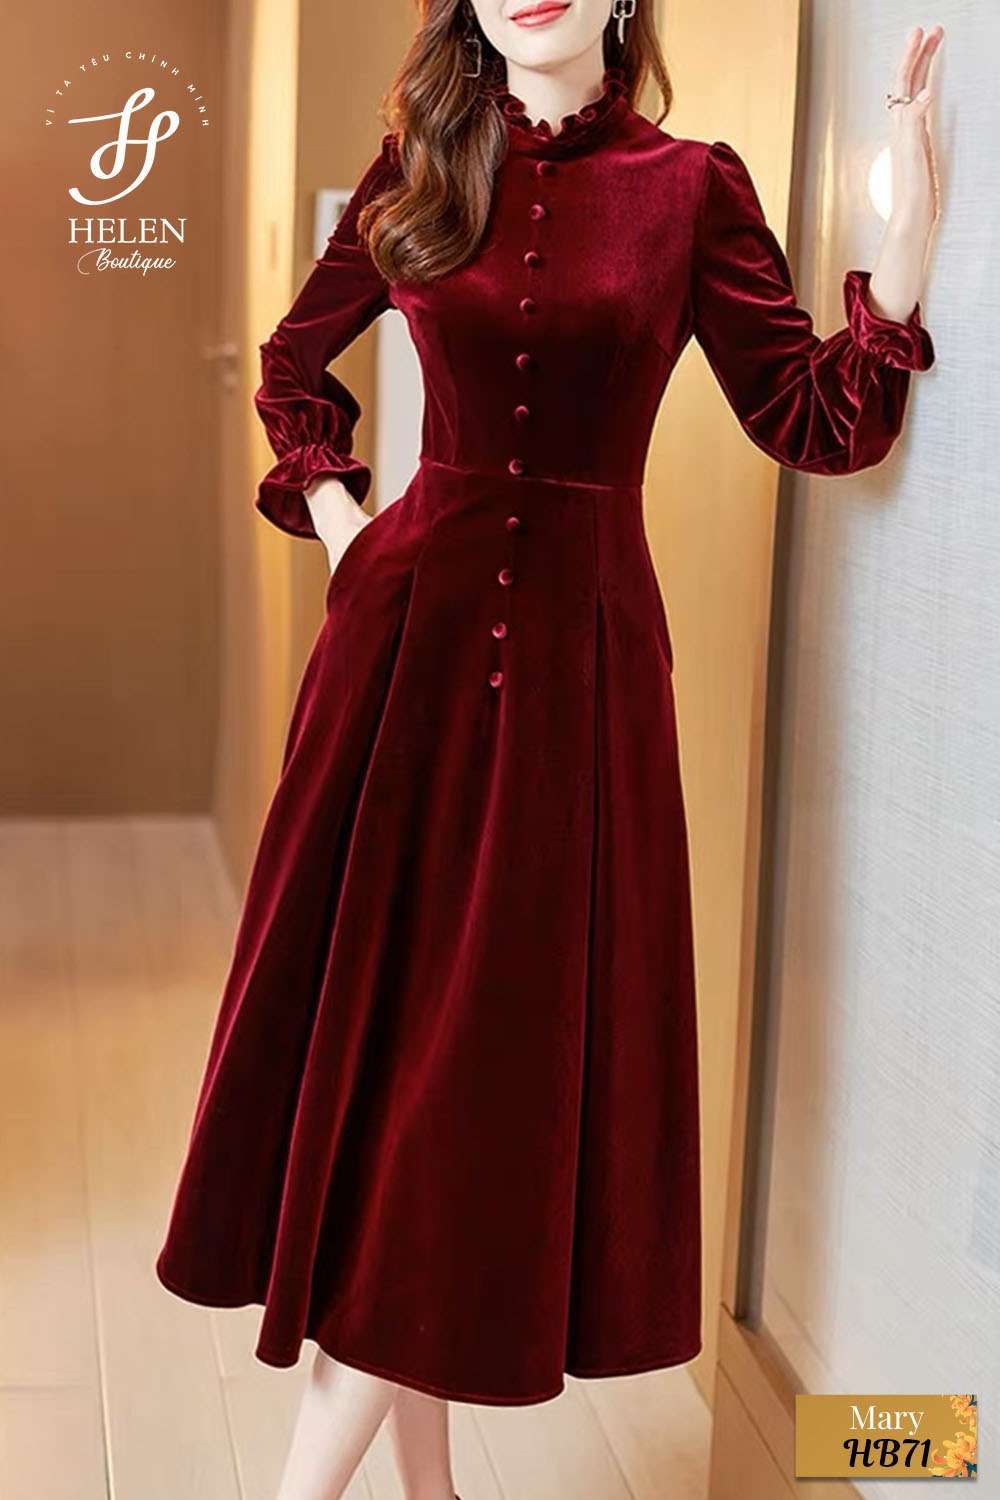  Bany Dress  chiếc váy nhung cổ yếm cutout cực sang với tone màu đỏ đô  phối tay be siêu tôn da tặng kèm nơ đá cài xinh xuất sắc nha 